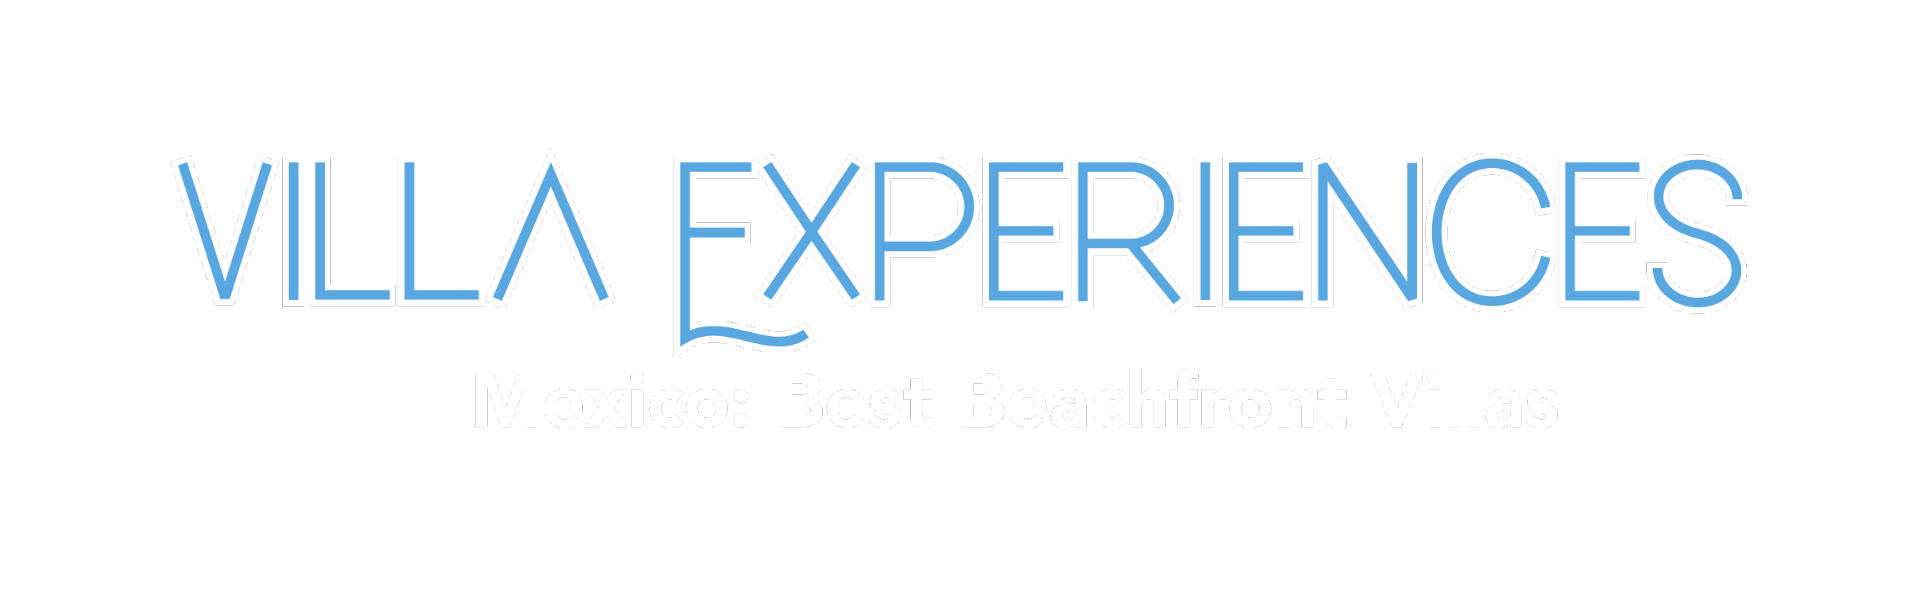 Villa Experiences: Mexico Beaches